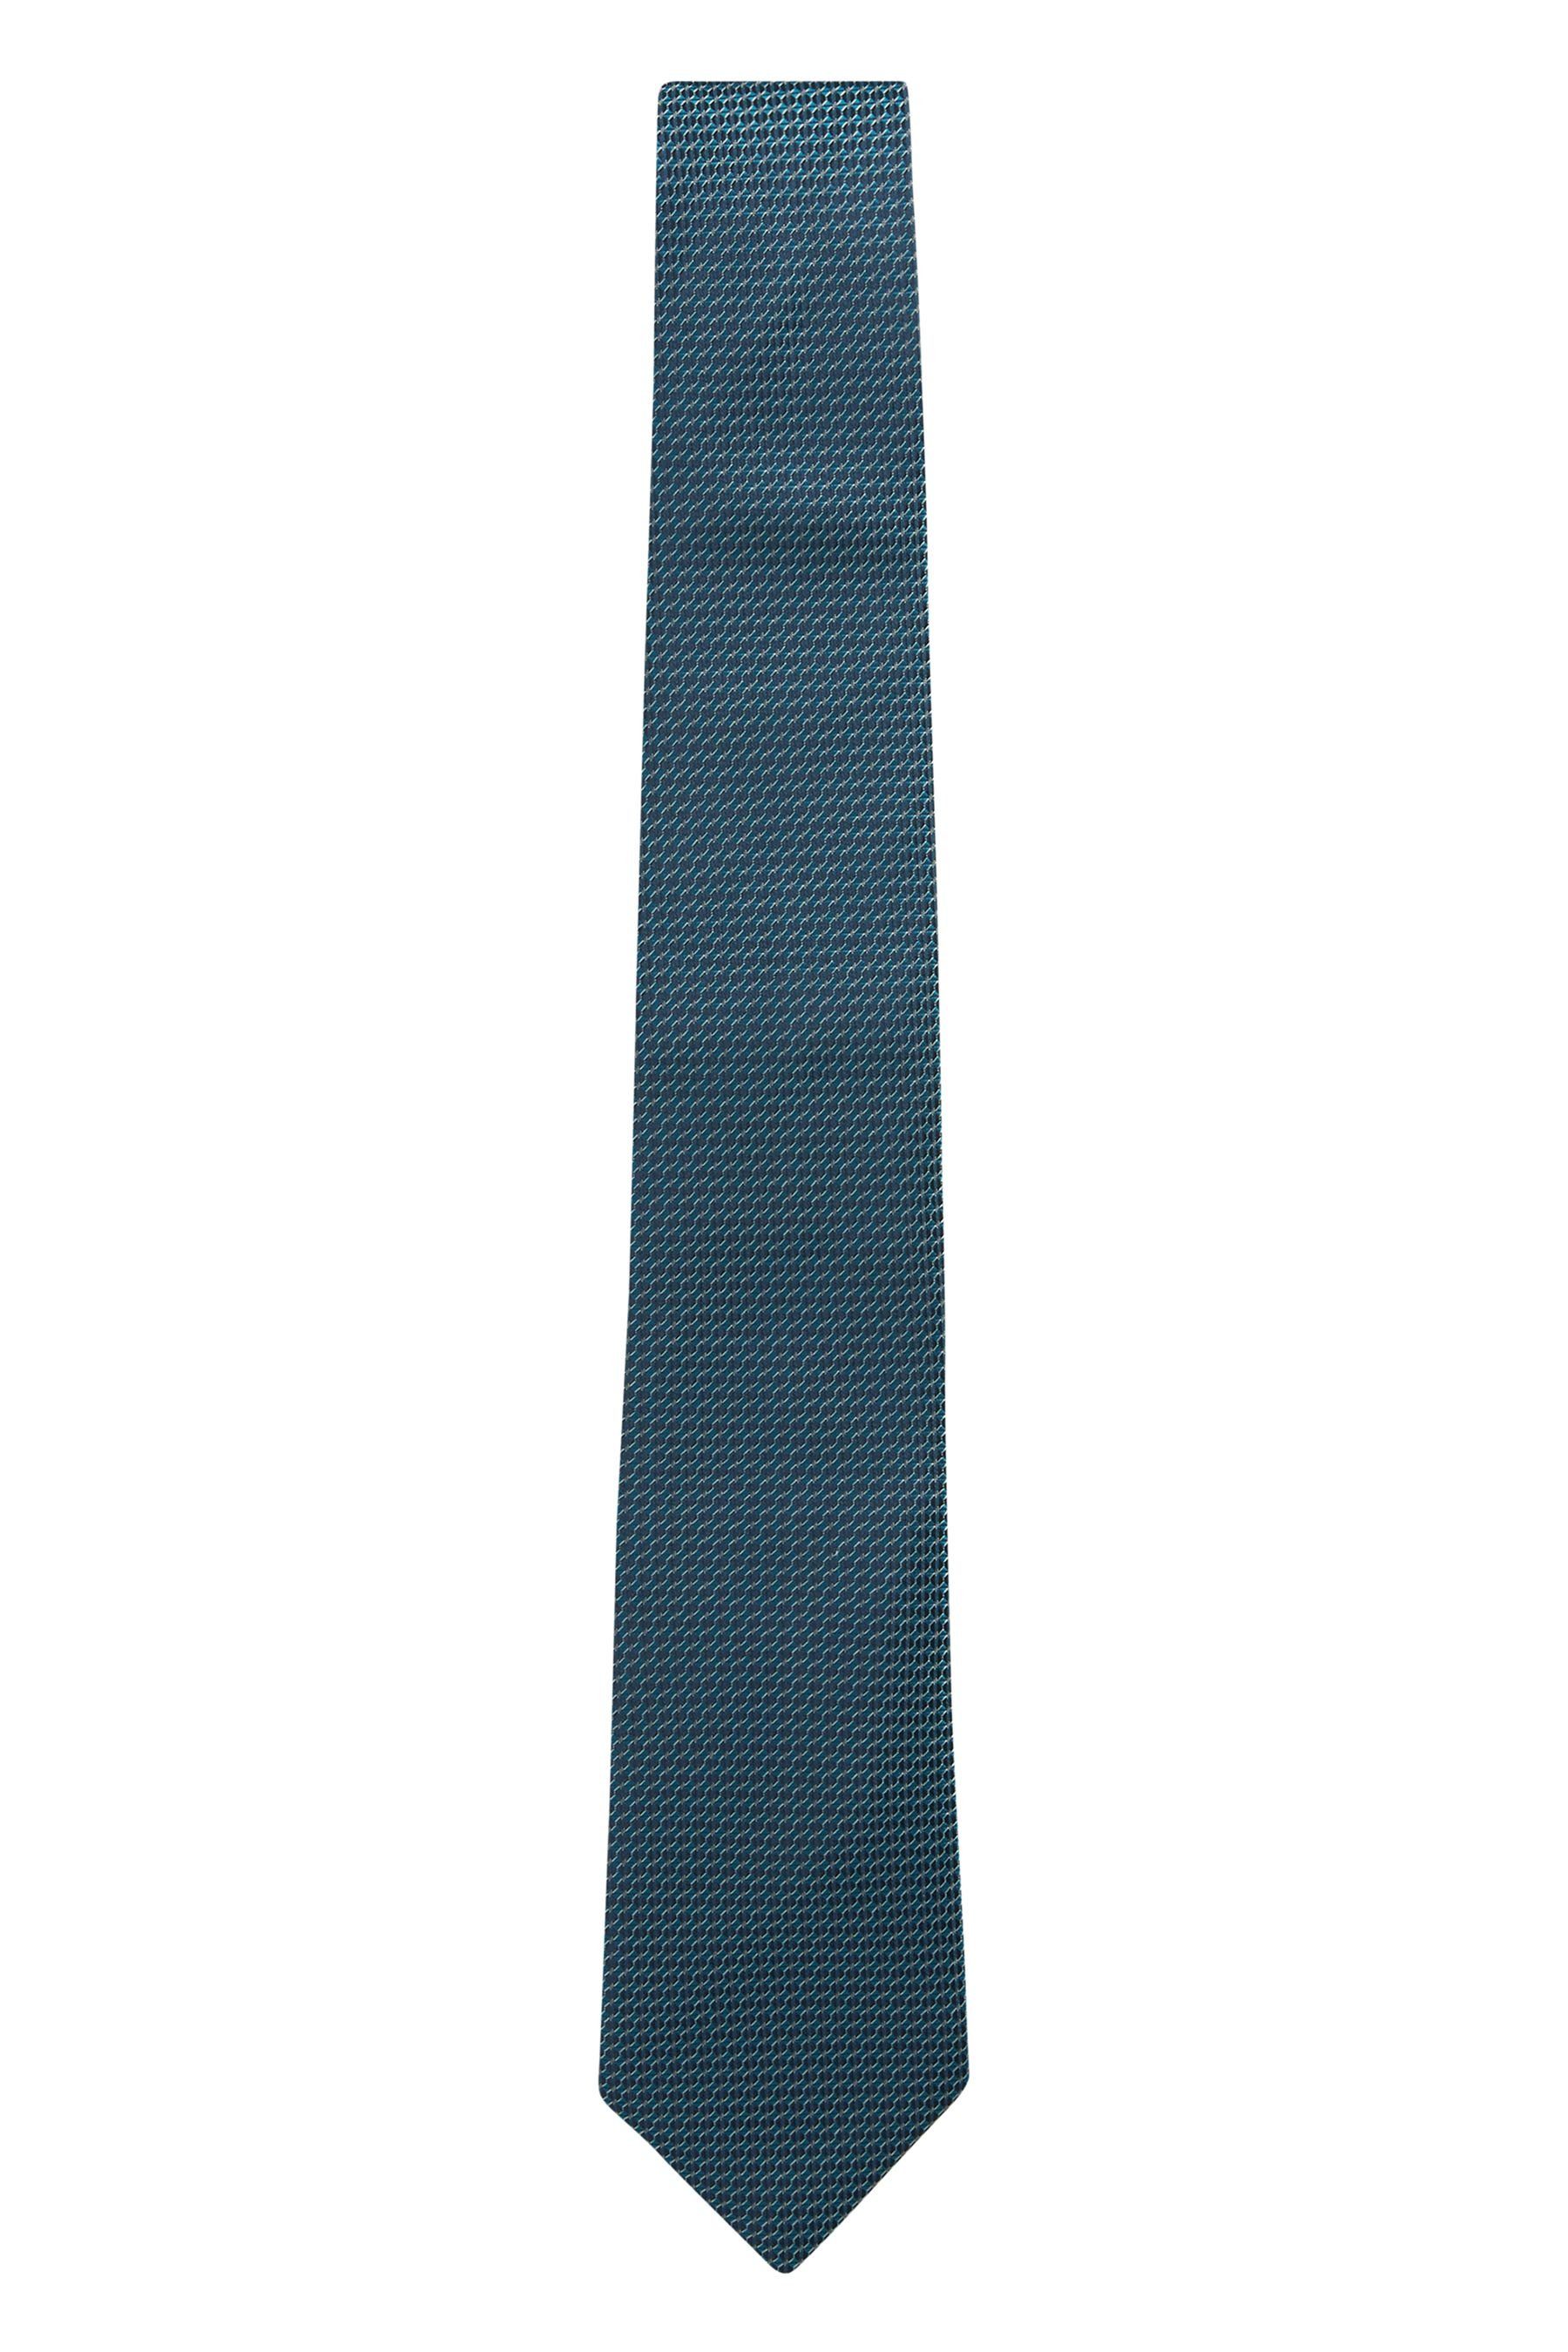 Einstecktuch Blue/Yellow Next und in Gold Signature-Krawatte Krawatte Floral Made Italy (2-St)